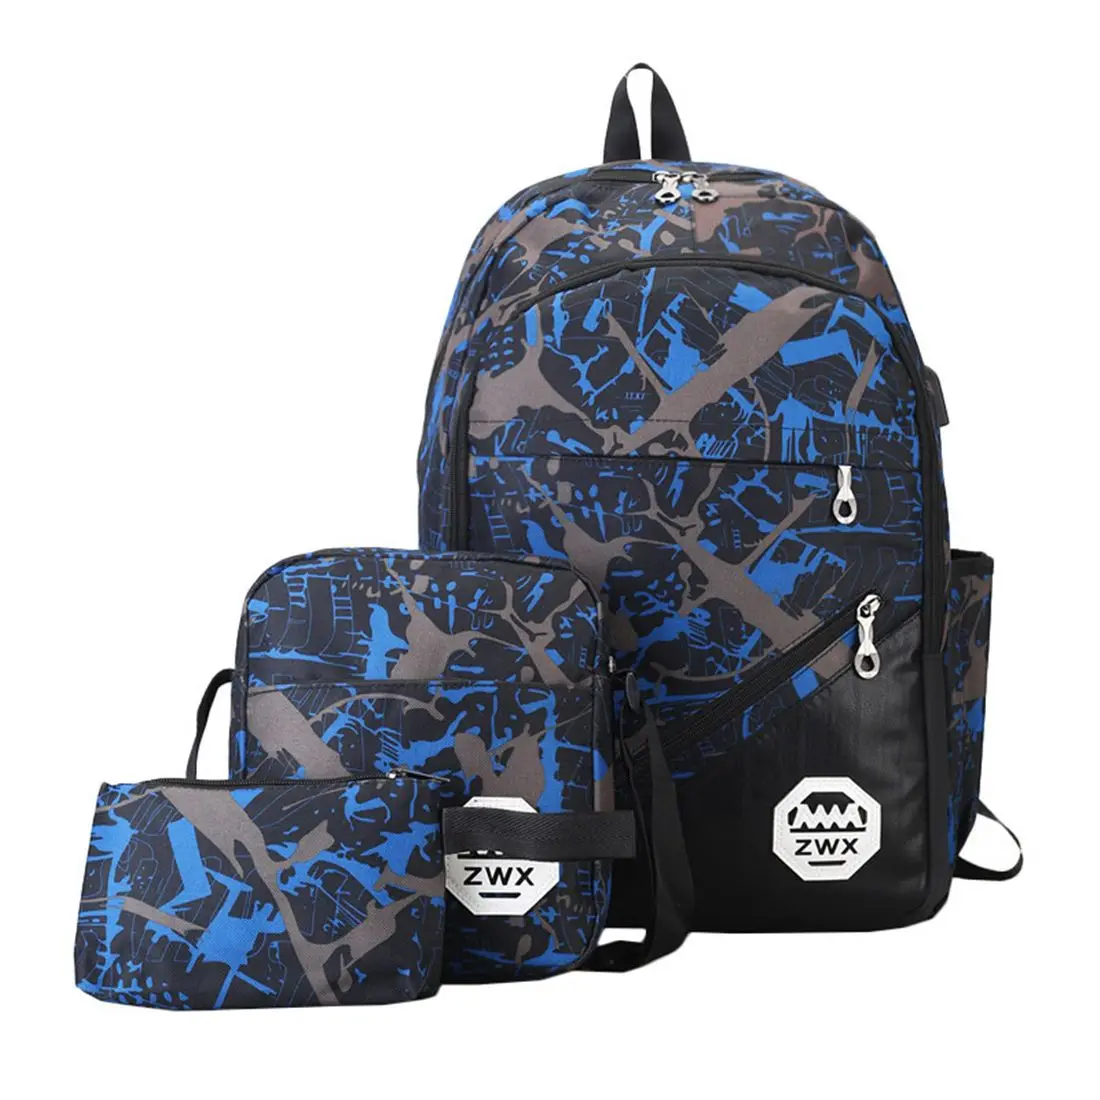 3 комплекта спортивного рюкзака для путешествий, модный износостойкий рюкзак на открытом воздухе, для пары, USB, для зарядки, большой емкости